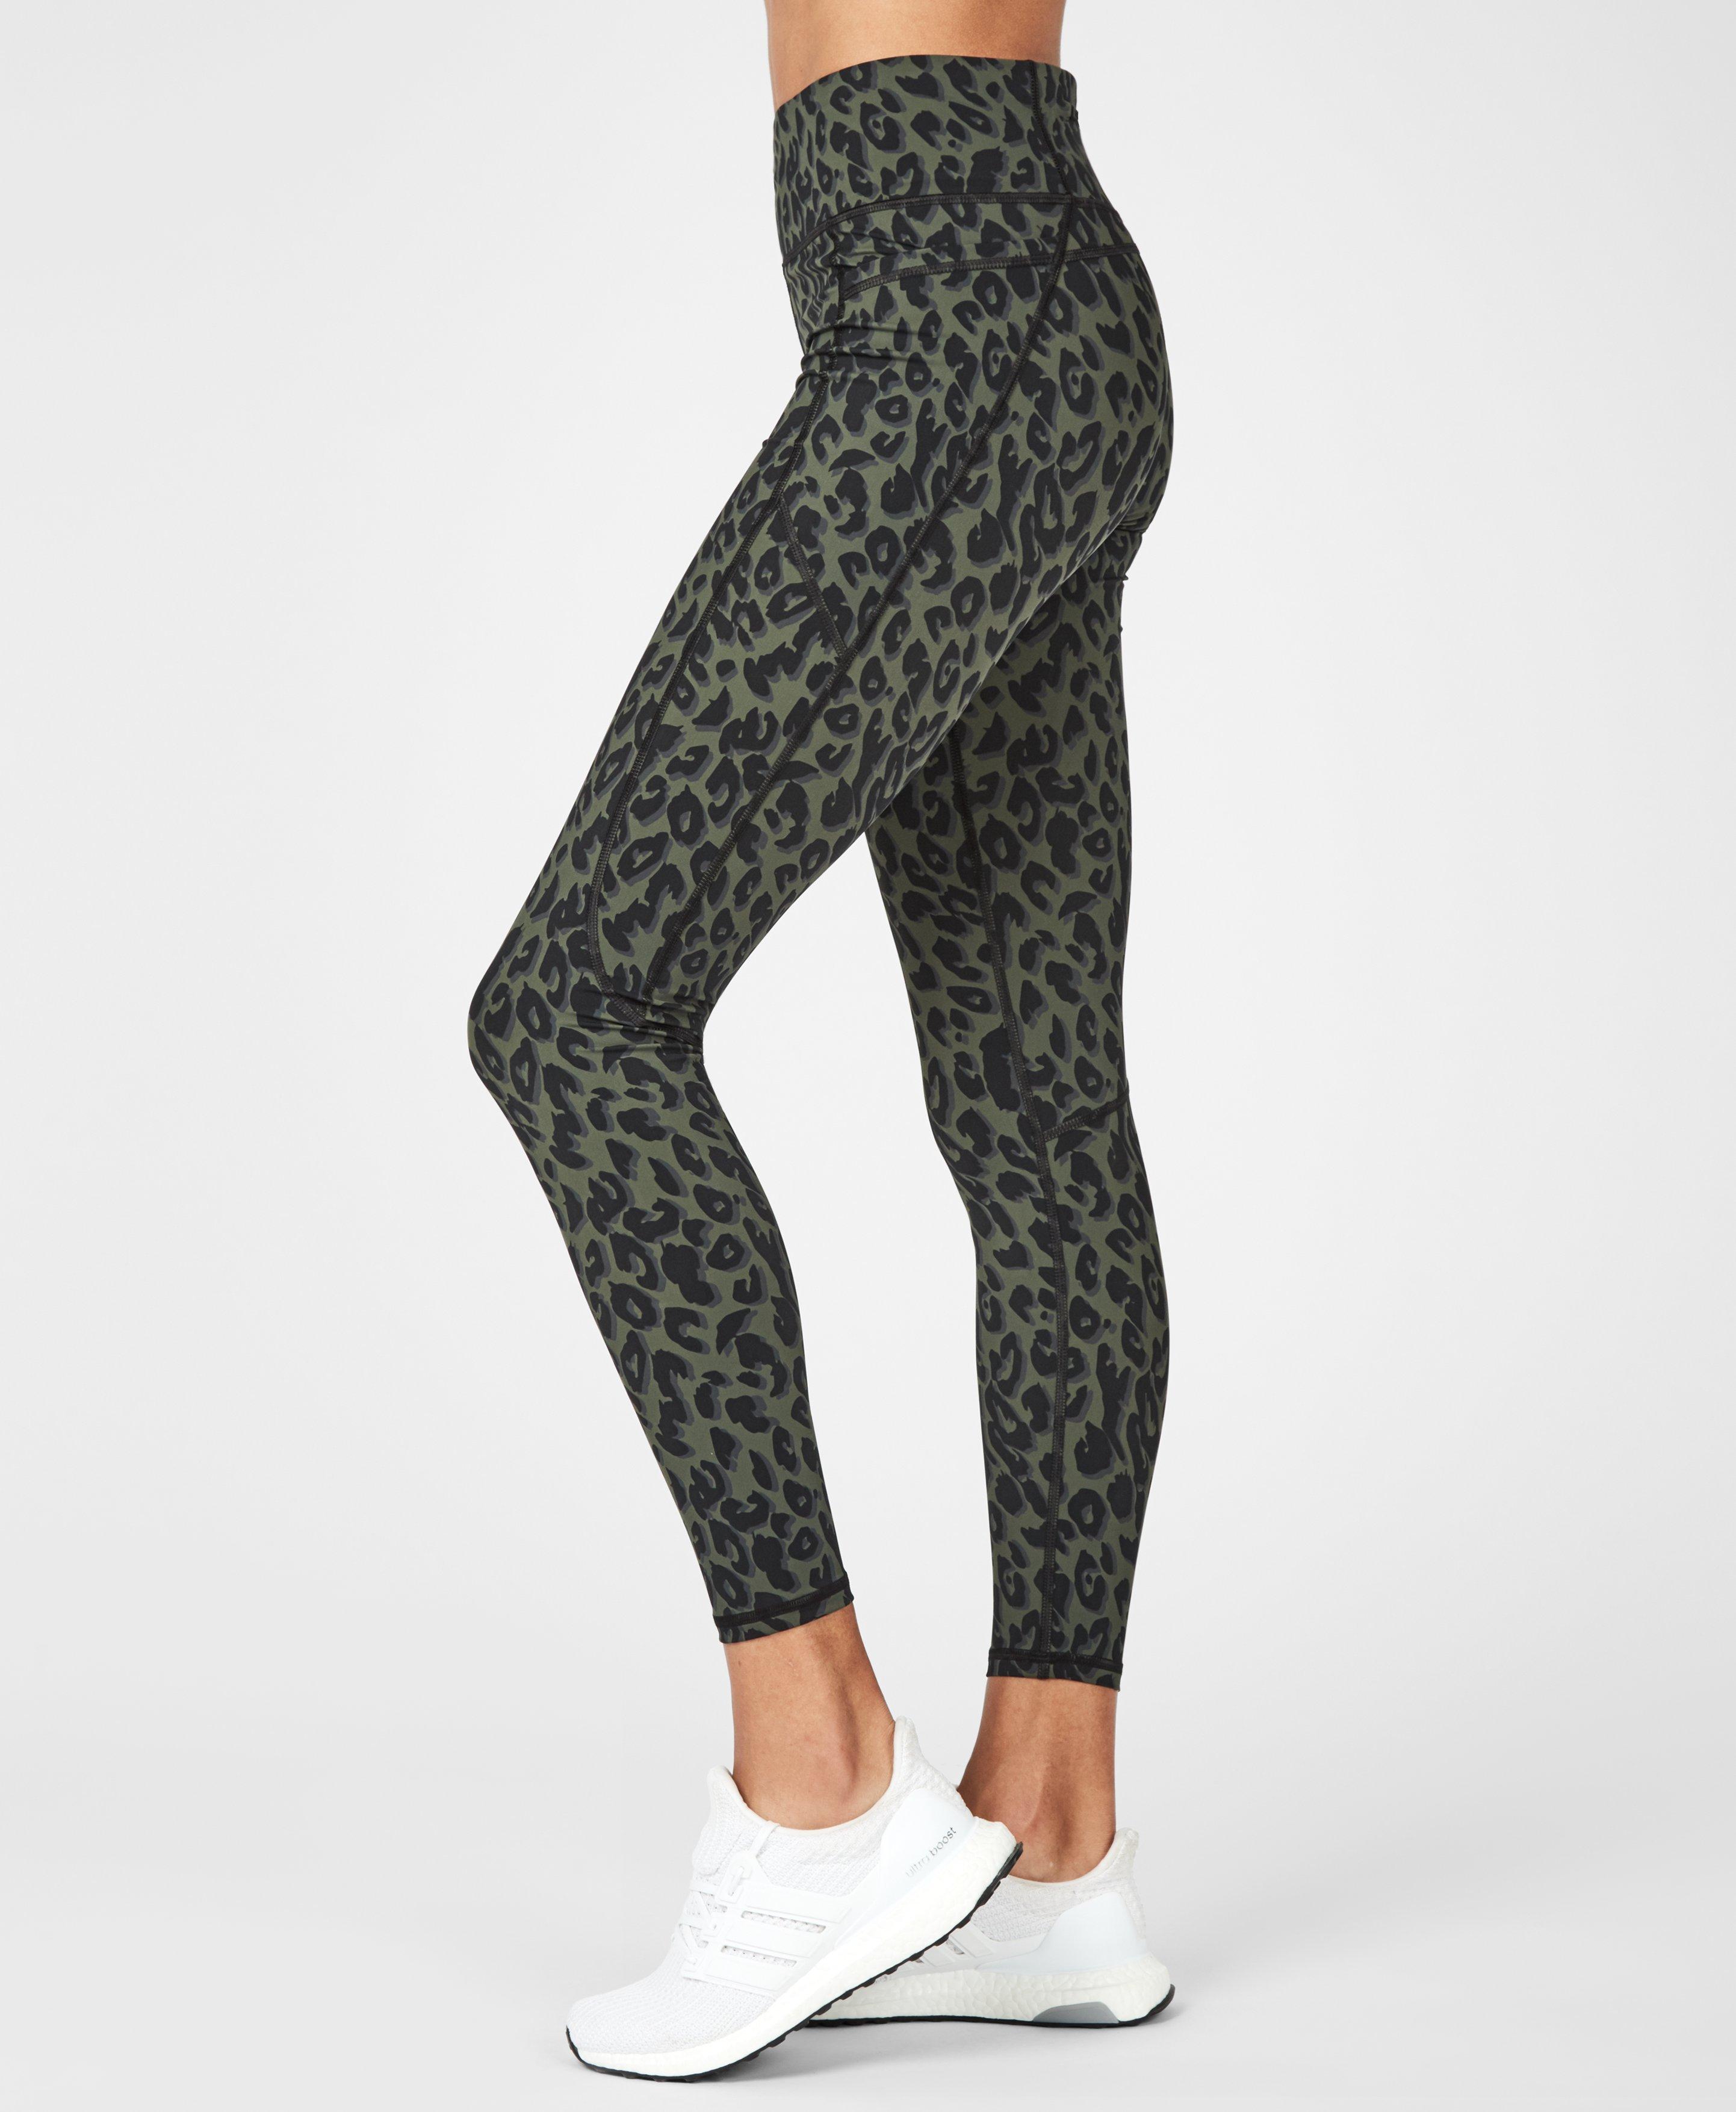 leopard athletic leggings